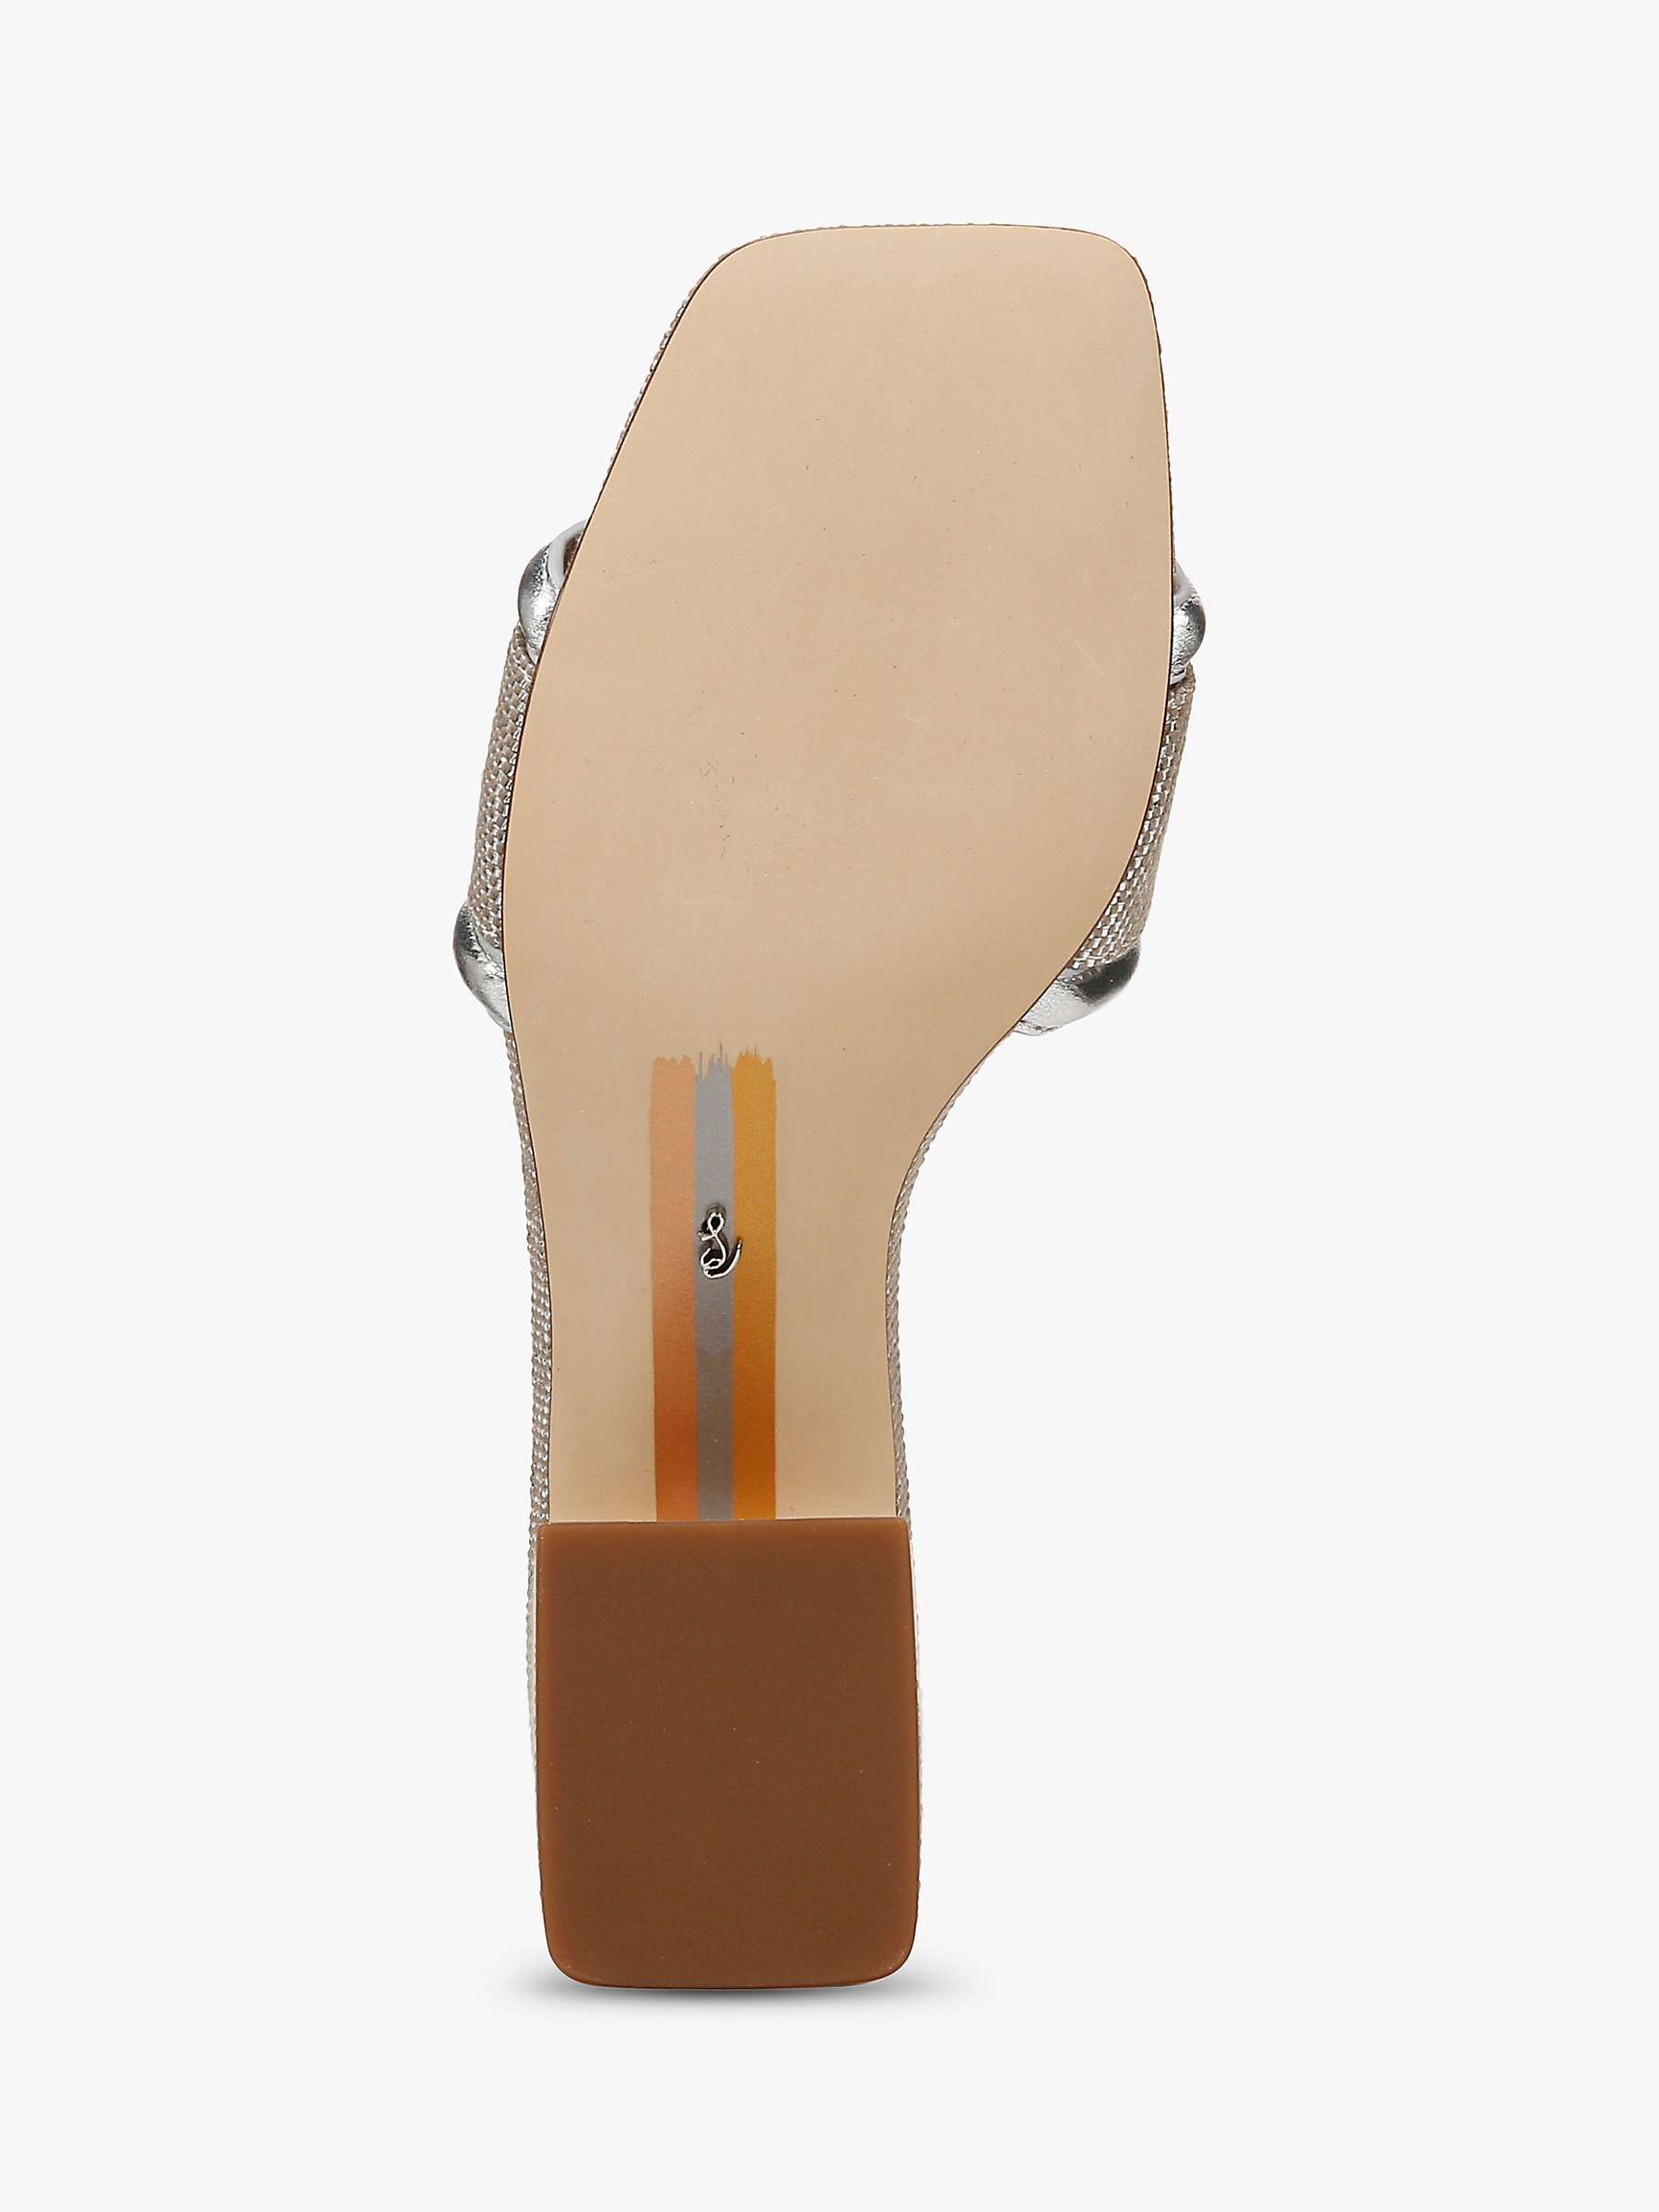 Buy Sam Edelman Waylon Heeled Sandals, Silver Online at johnlewis.com